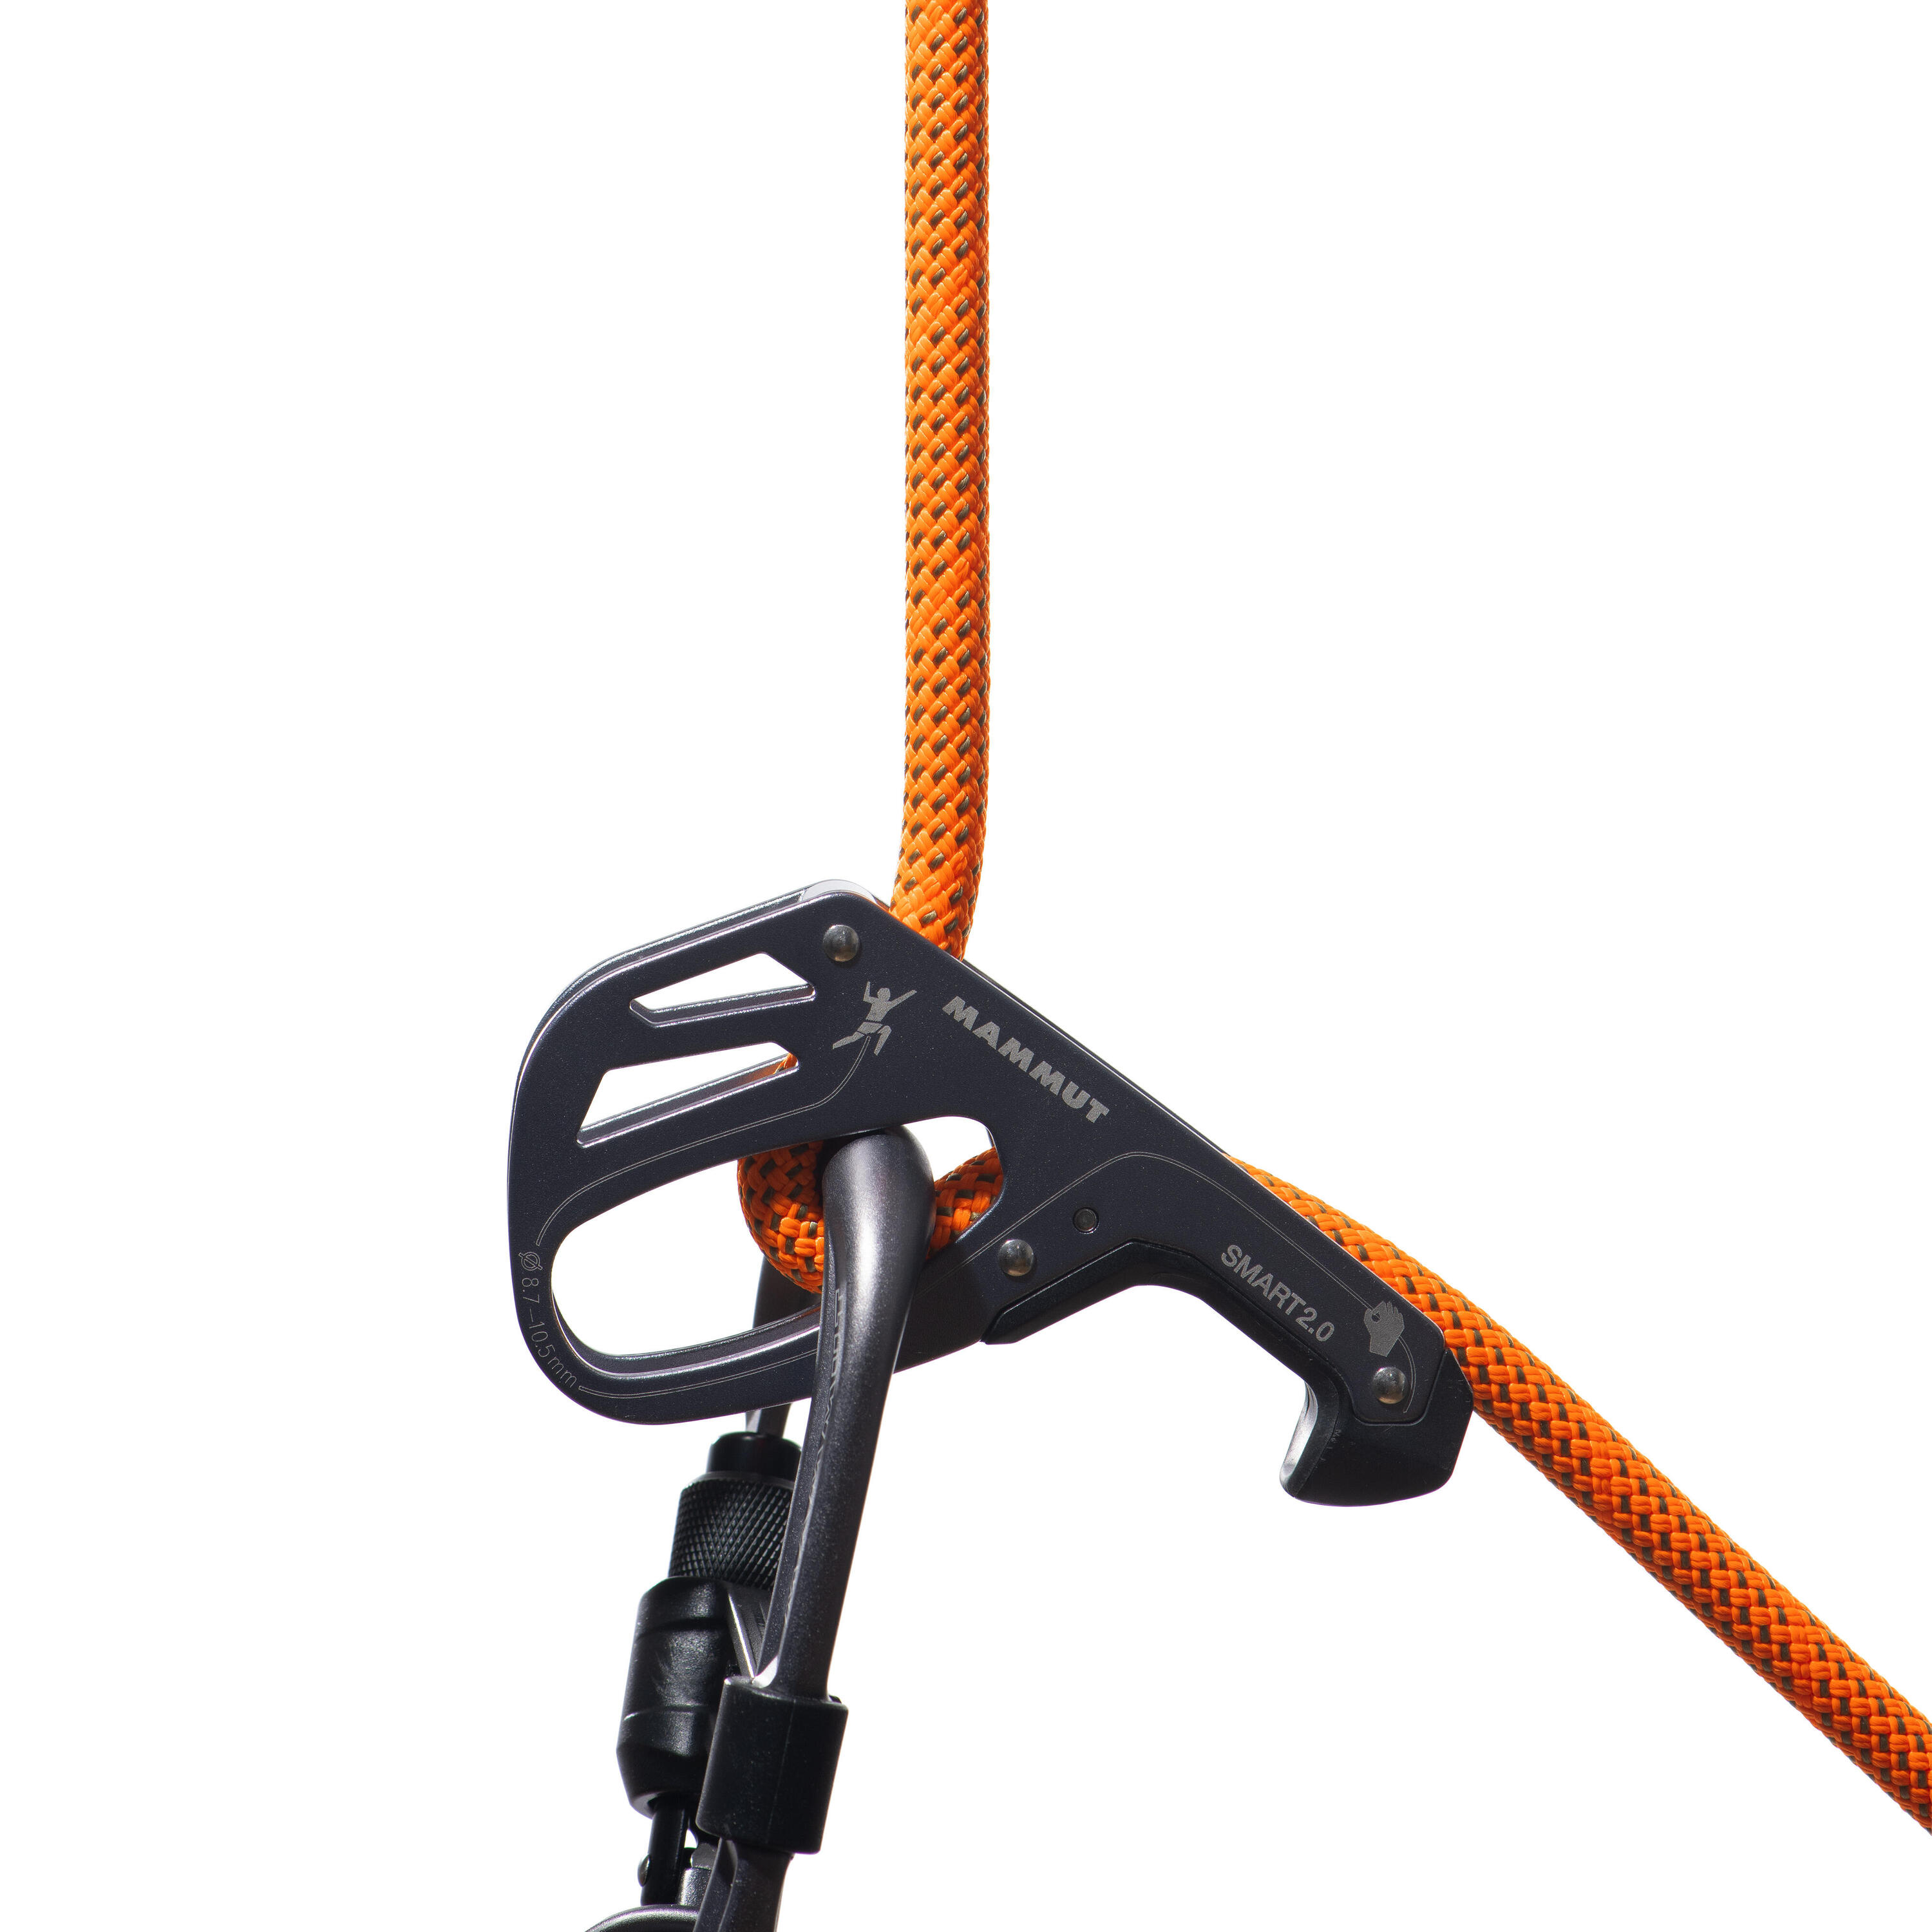 Crag Dry Single Rope 9.8 mm x 60m - Orange 4/4